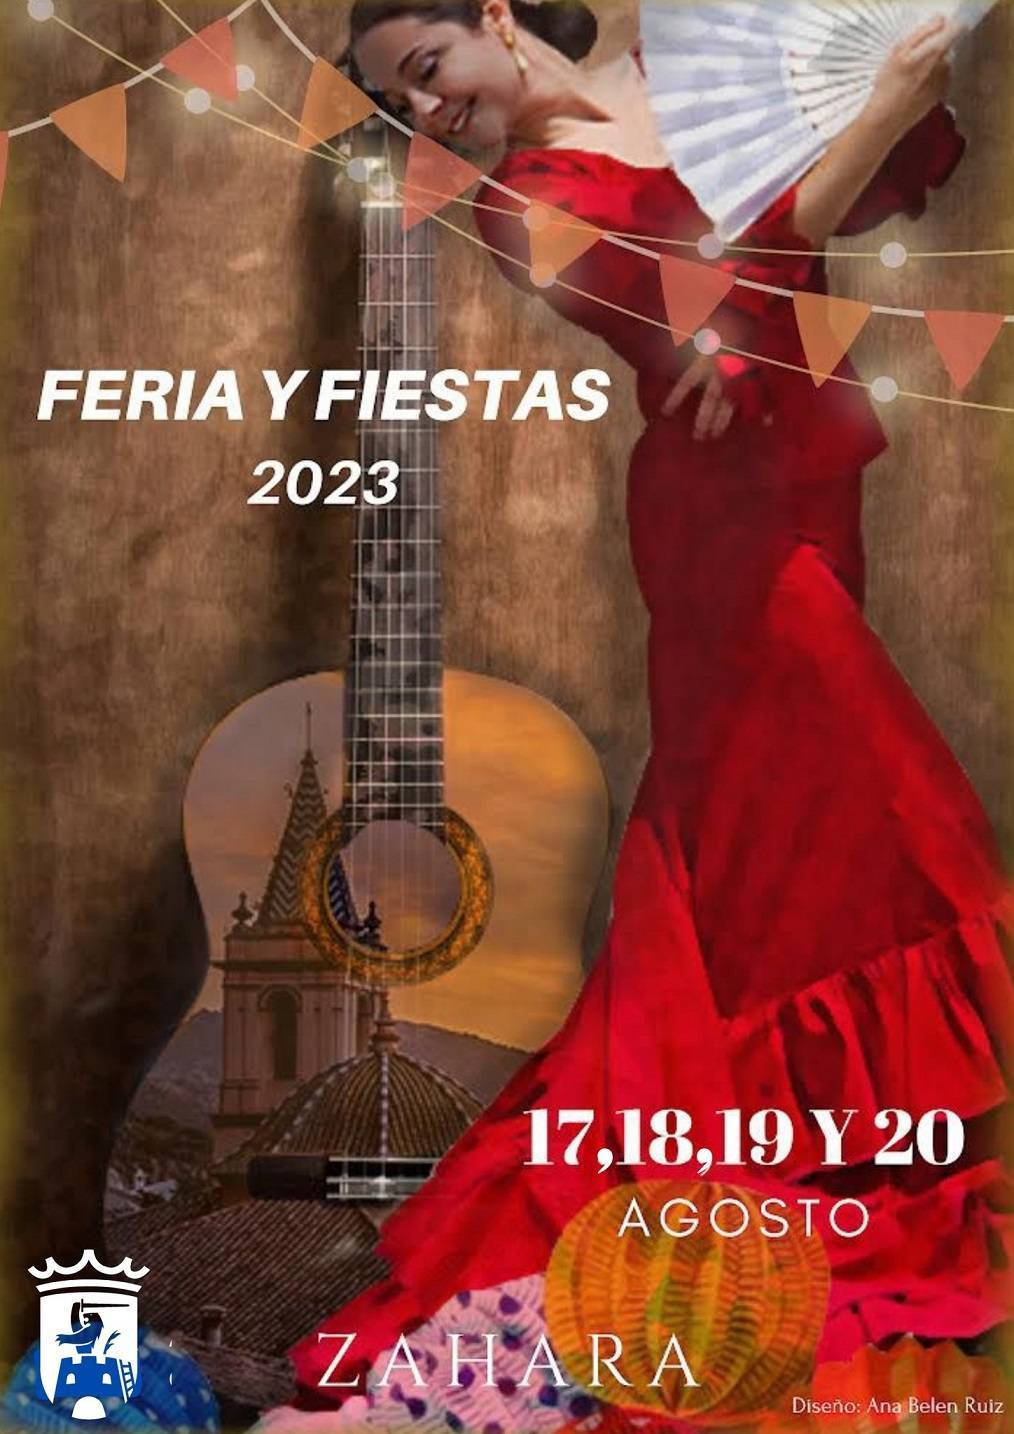 Feria y fiestas (2023) - Zahara de la Sierra (Cádiz) 1